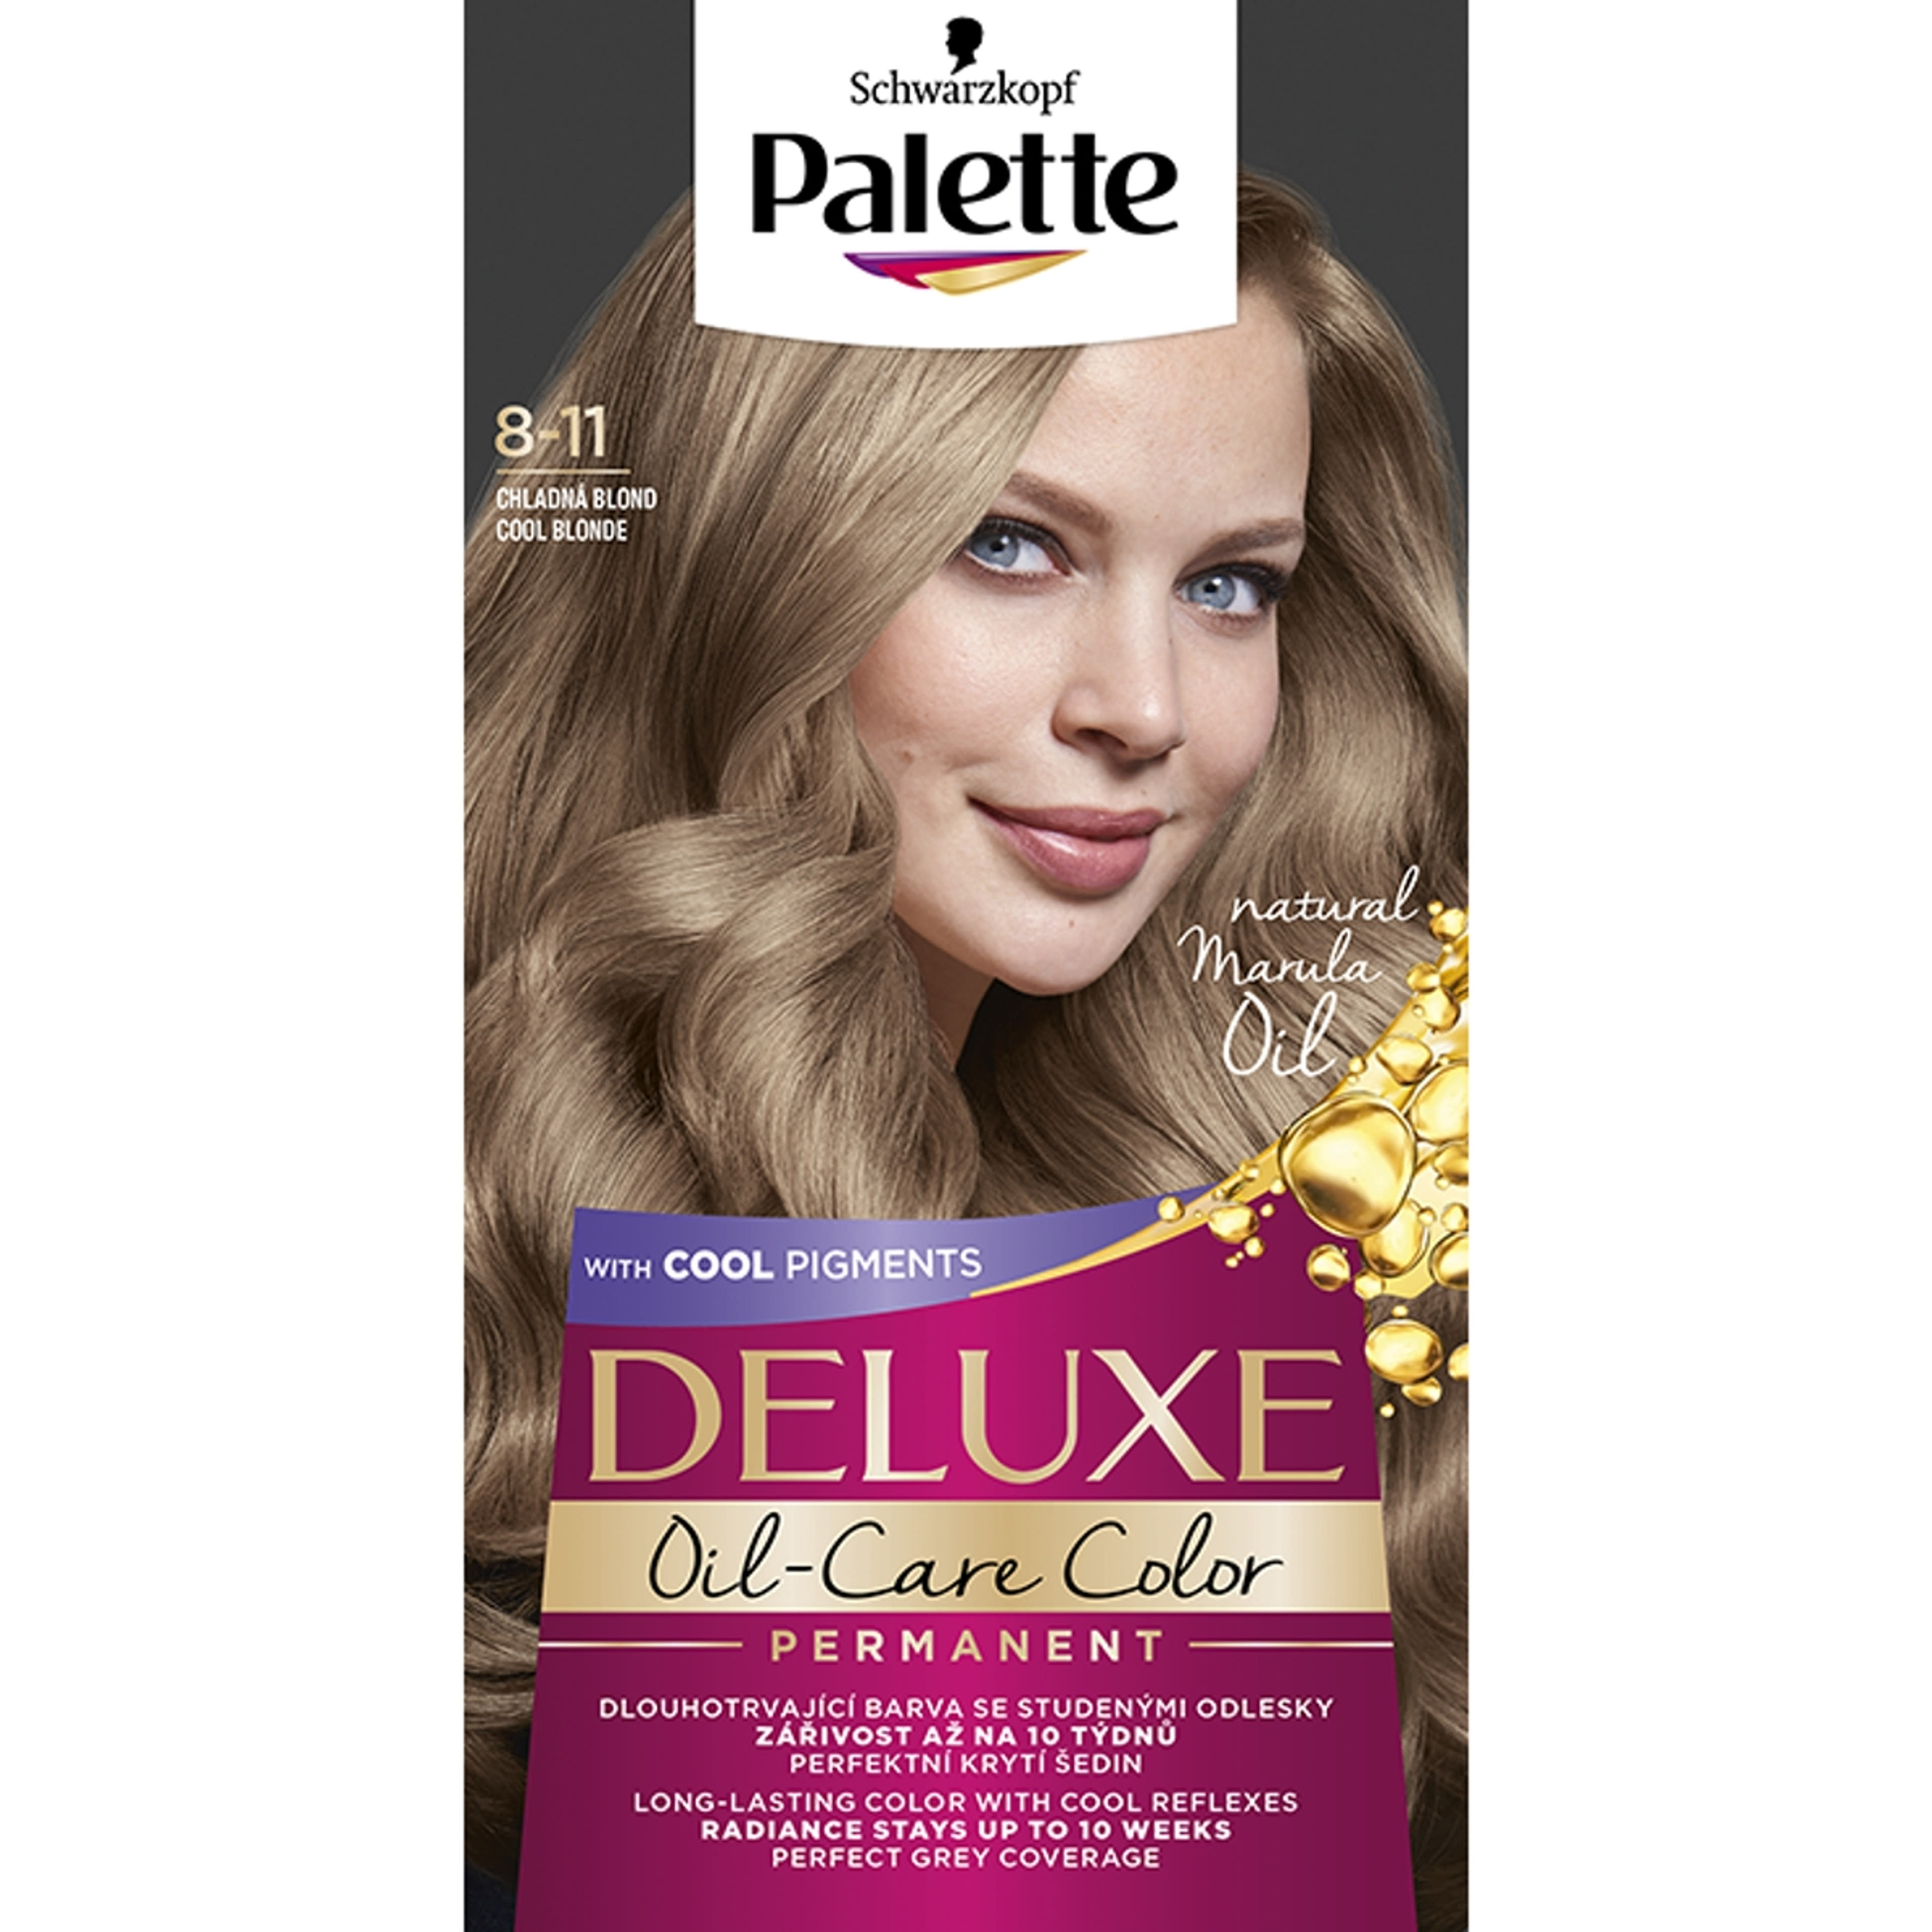 Palette Deluxe tartós hajfesték 8-11 hűvös természetes szőke - 1 db-1